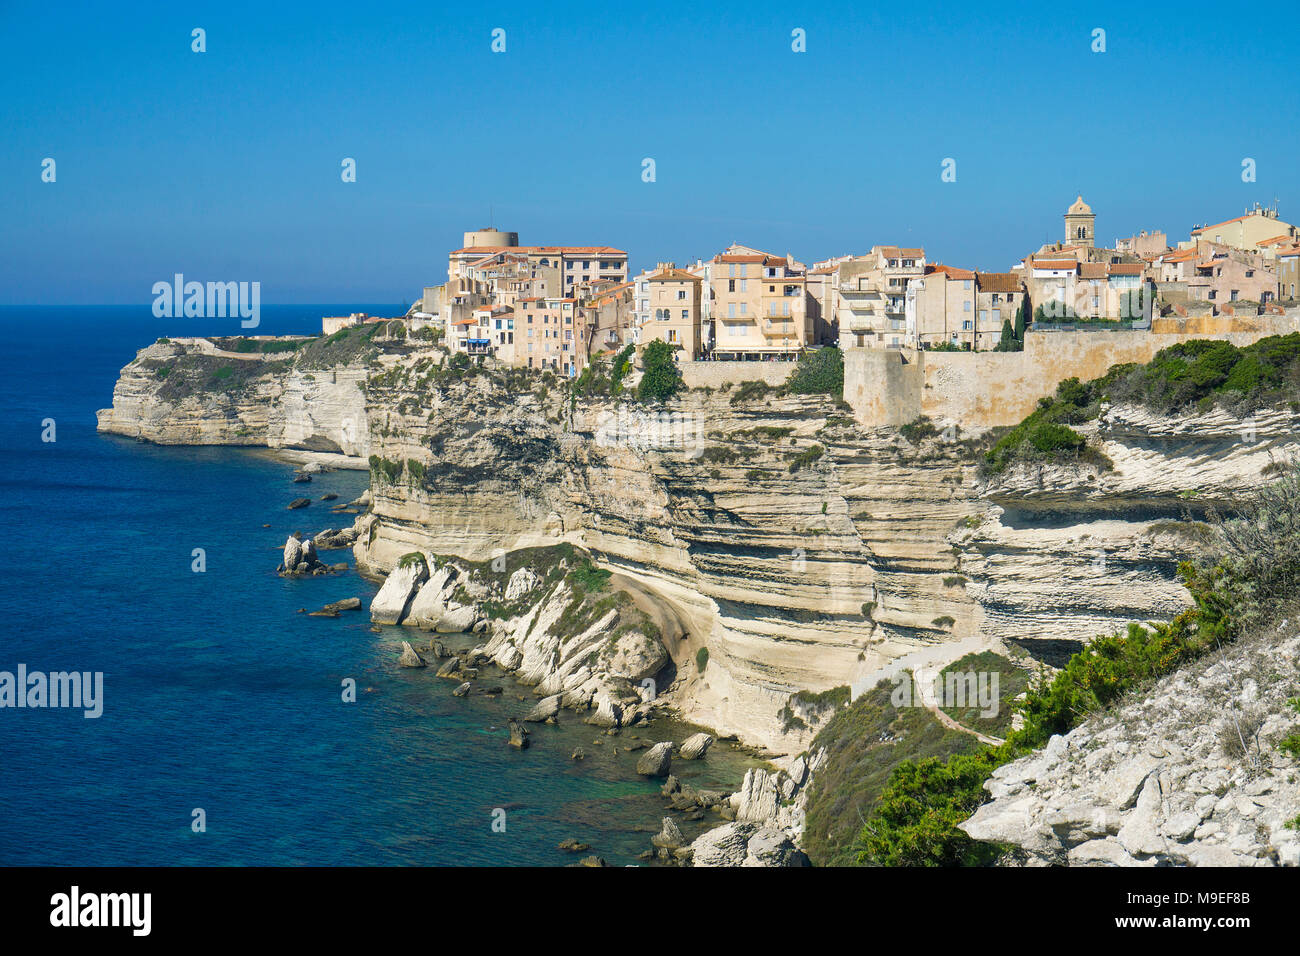 Citadelle et la haute ville de Bonifacio, construit sur une falaise chalkstone, Corse, France, Europe, Méditerranée Banque D'Images